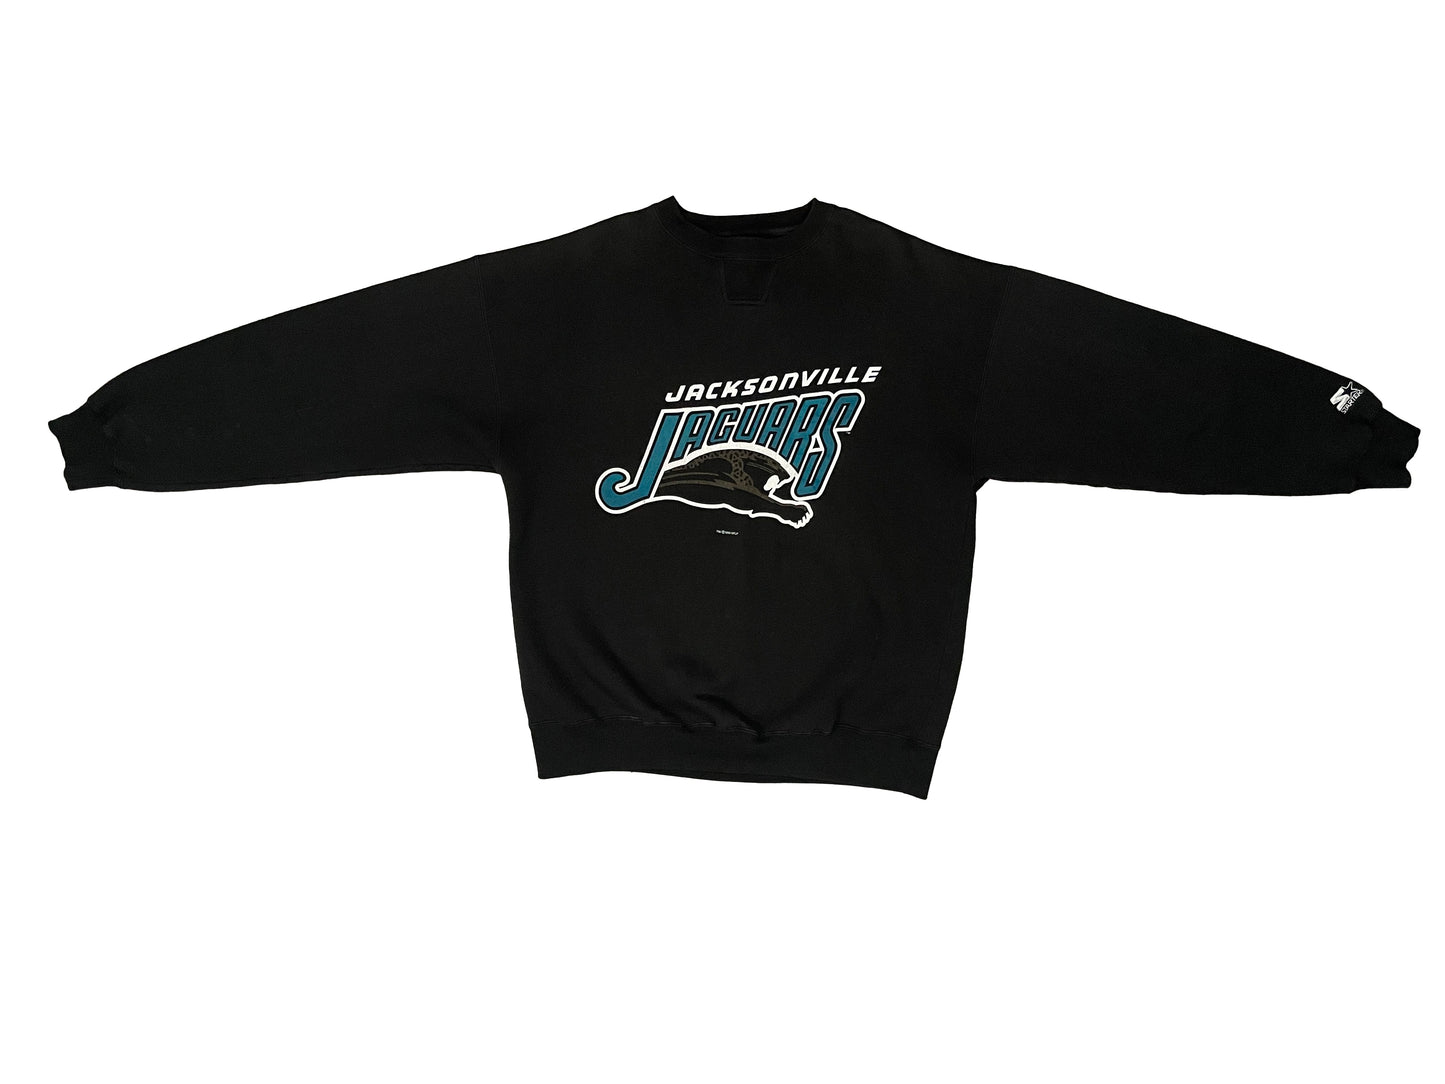 Vintage Jacksonville Jaguars 1993 banned logo STARTER sweatshirt size XL